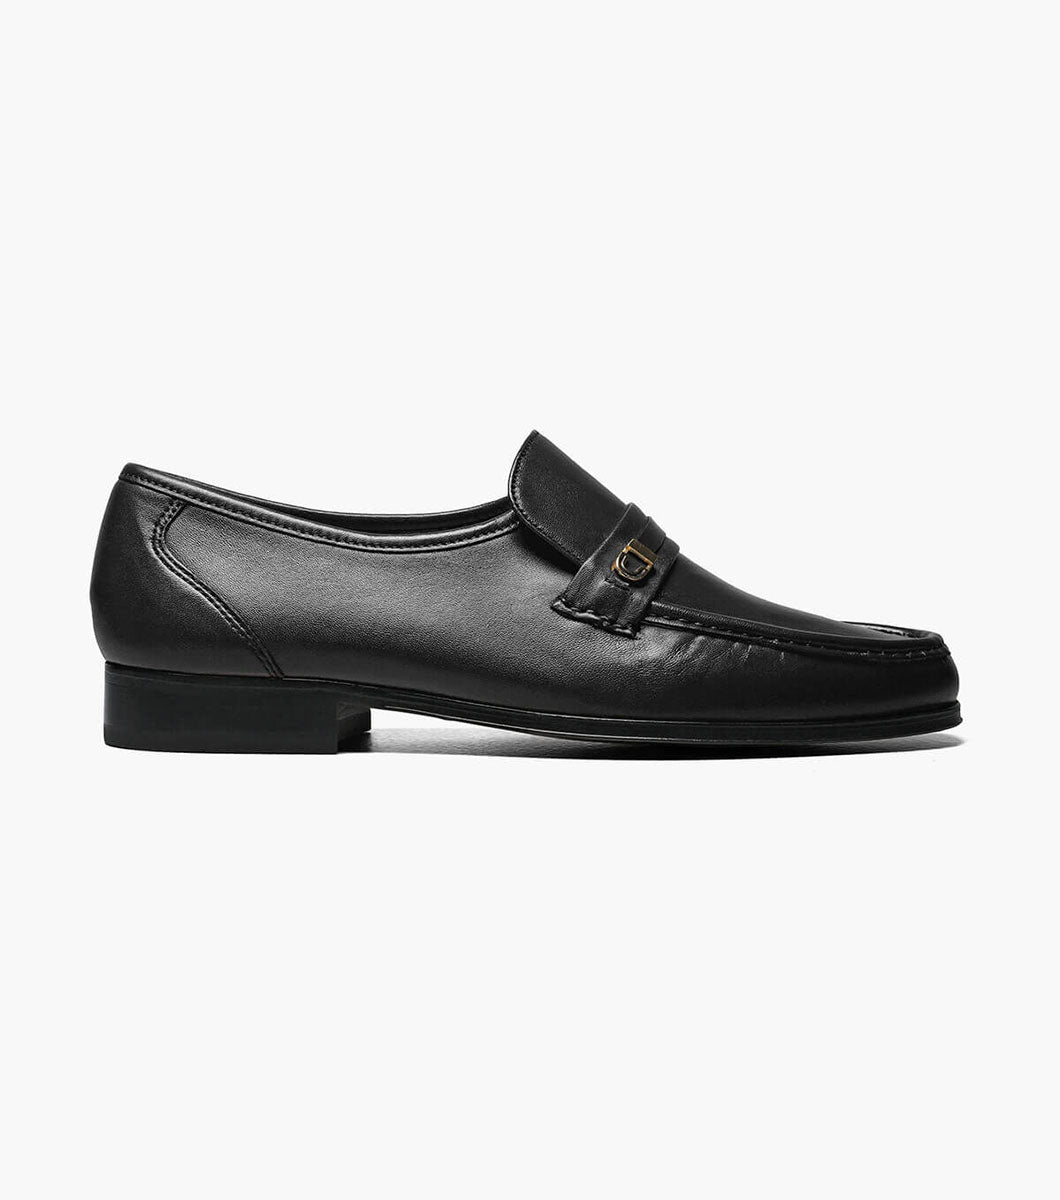 FLORSHEIM Imperial Como Moc Toe Bit Loafer - Black (Size 11D)